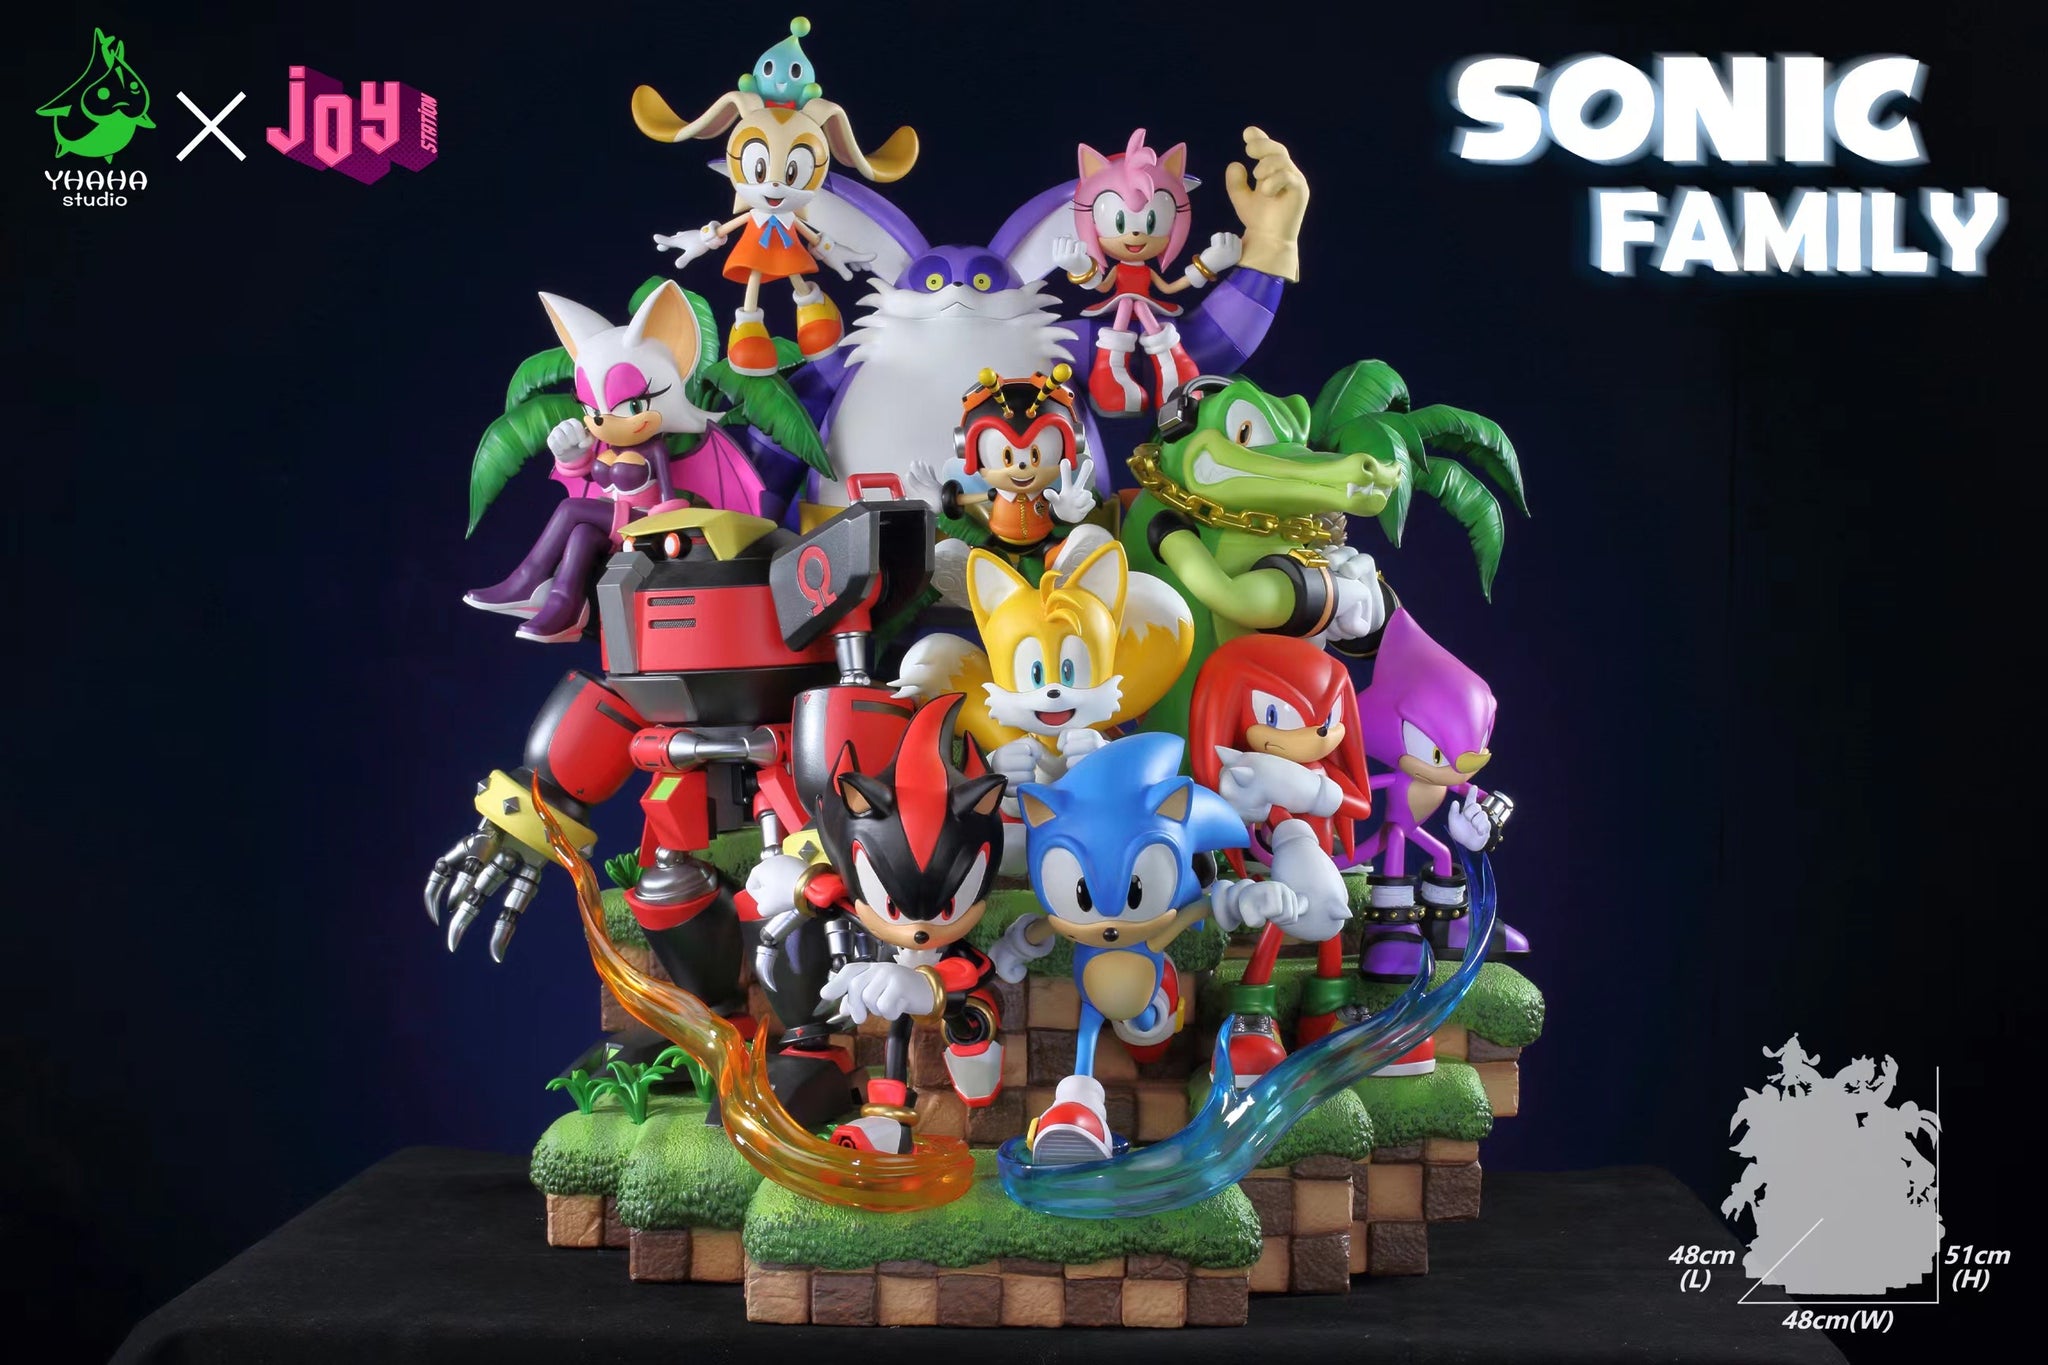 Sonic Joy Station Studio Sonic Family Resin Statue [PRE-ORDER]